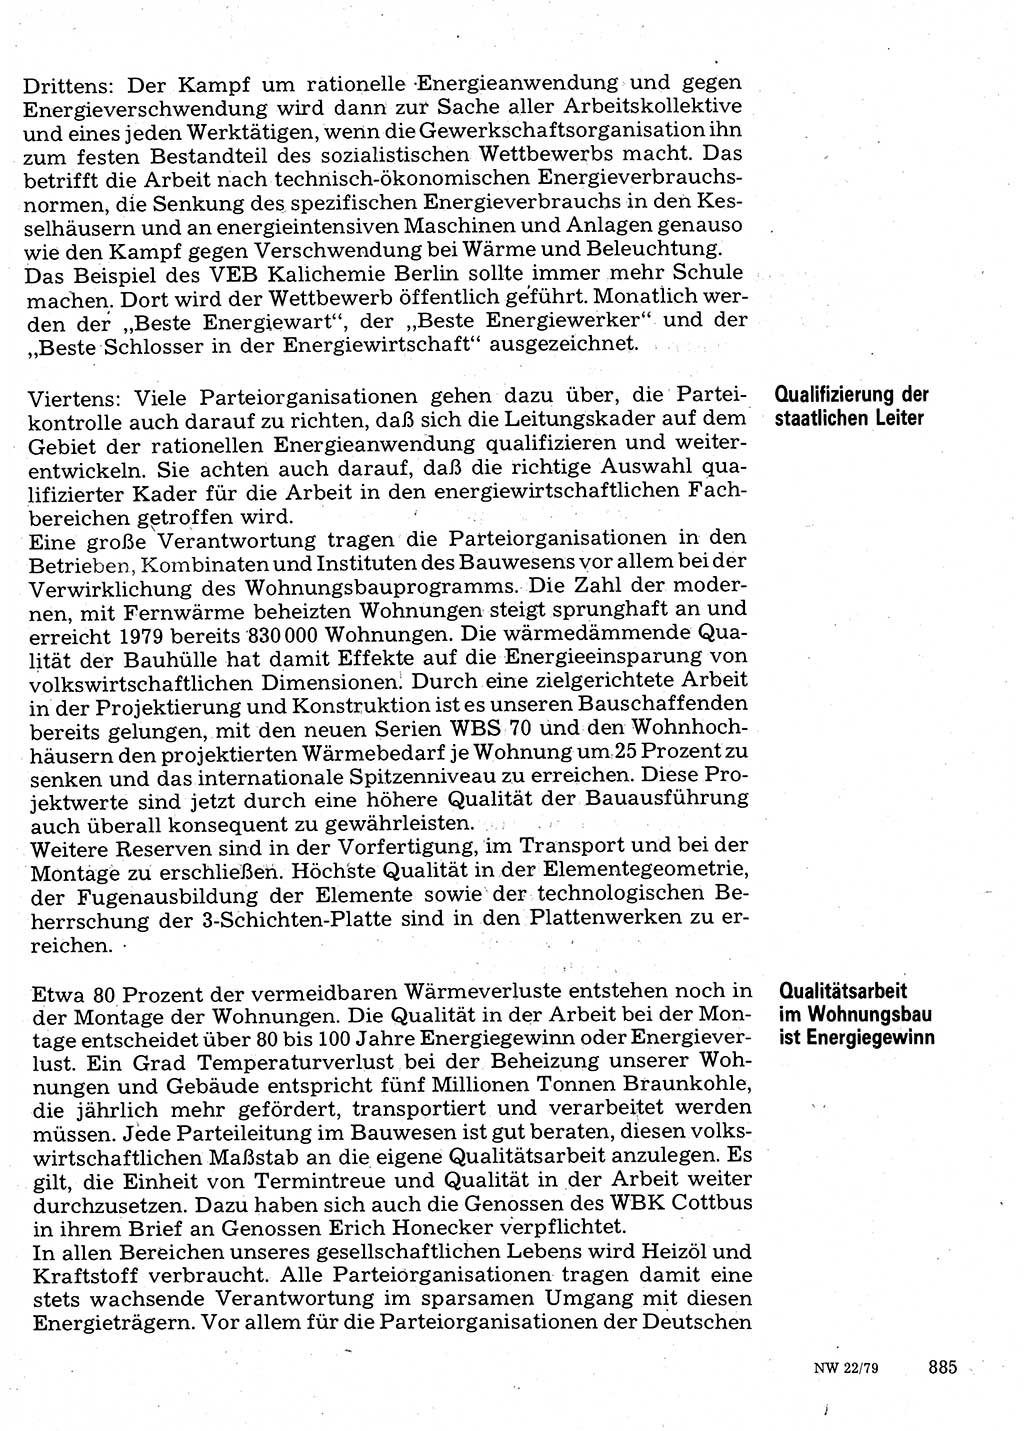 Neuer Weg (NW), Organ des Zentralkomitees (ZK) der SED (Sozialistische Einheitspartei Deutschlands) für Fragen des Parteilebens, 34. Jahrgang [Deutsche Demokratische Republik (DDR)] 1979, Seite 885 (NW ZK SED DDR 1979, S. 885)